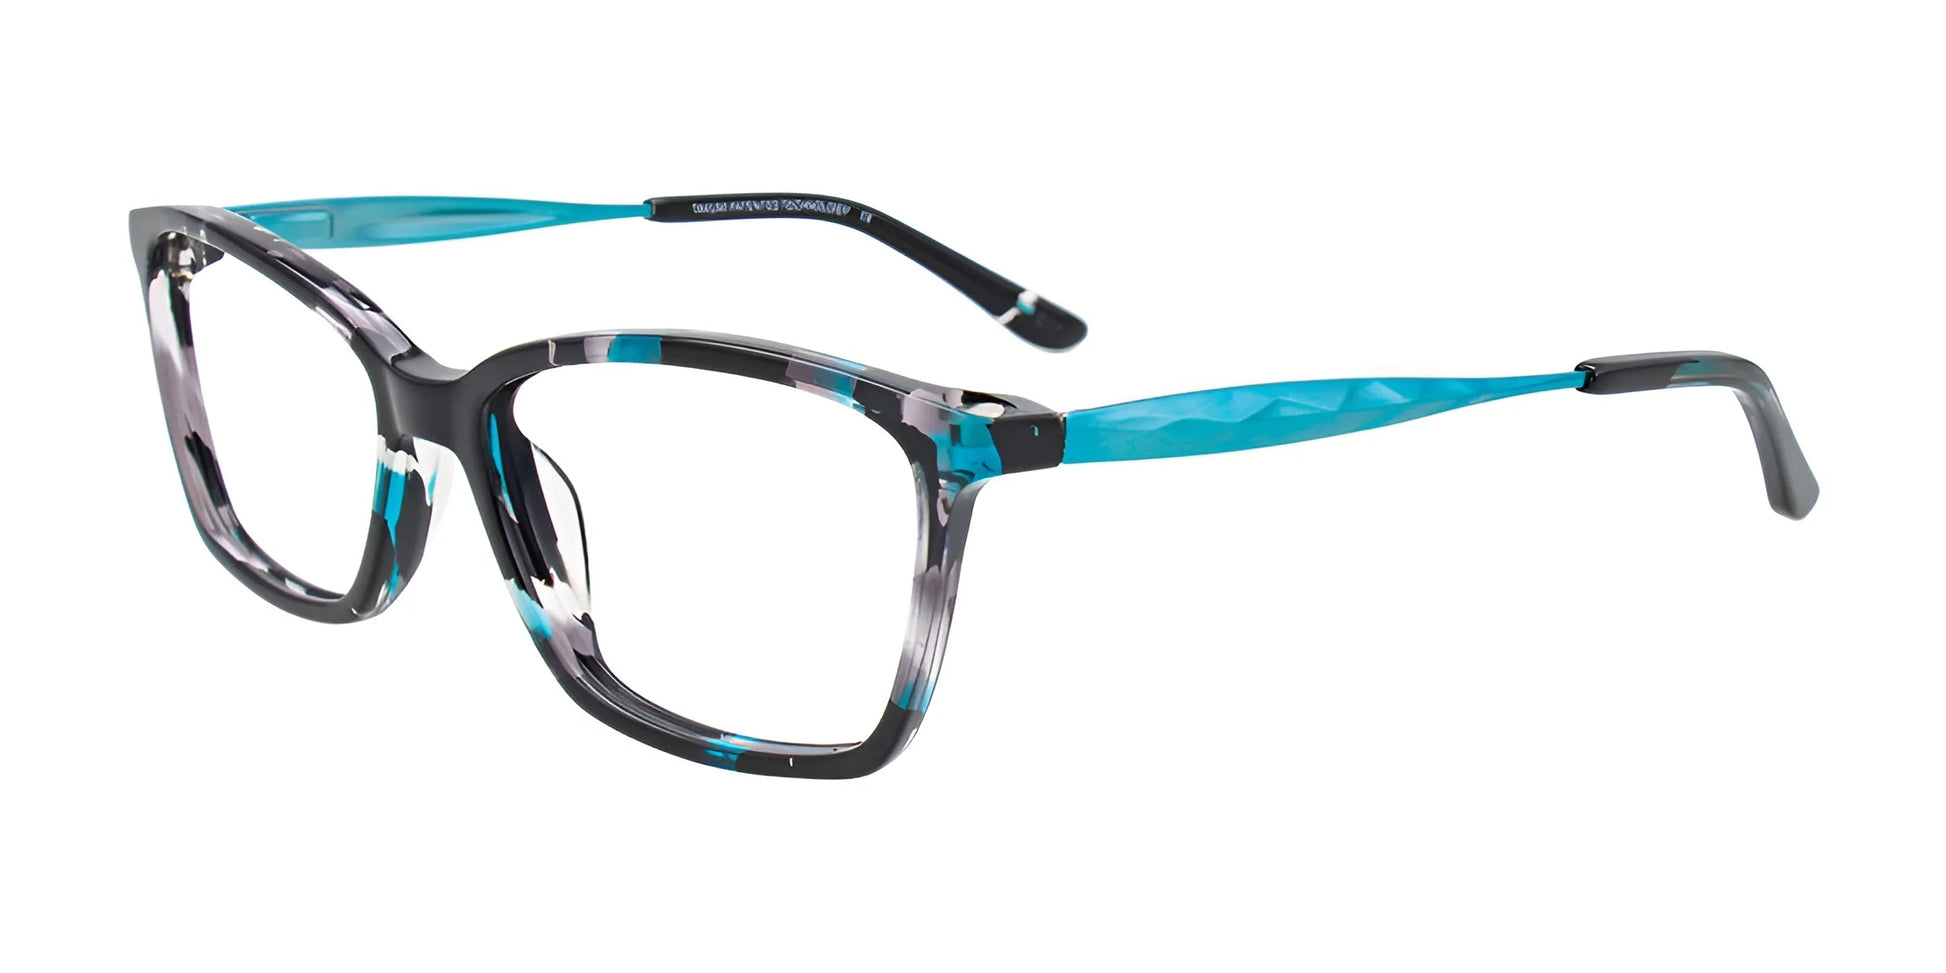 Takumi TK1082 Eyeglasses with Clip-on Sunglasses Teal & Black & Crystal